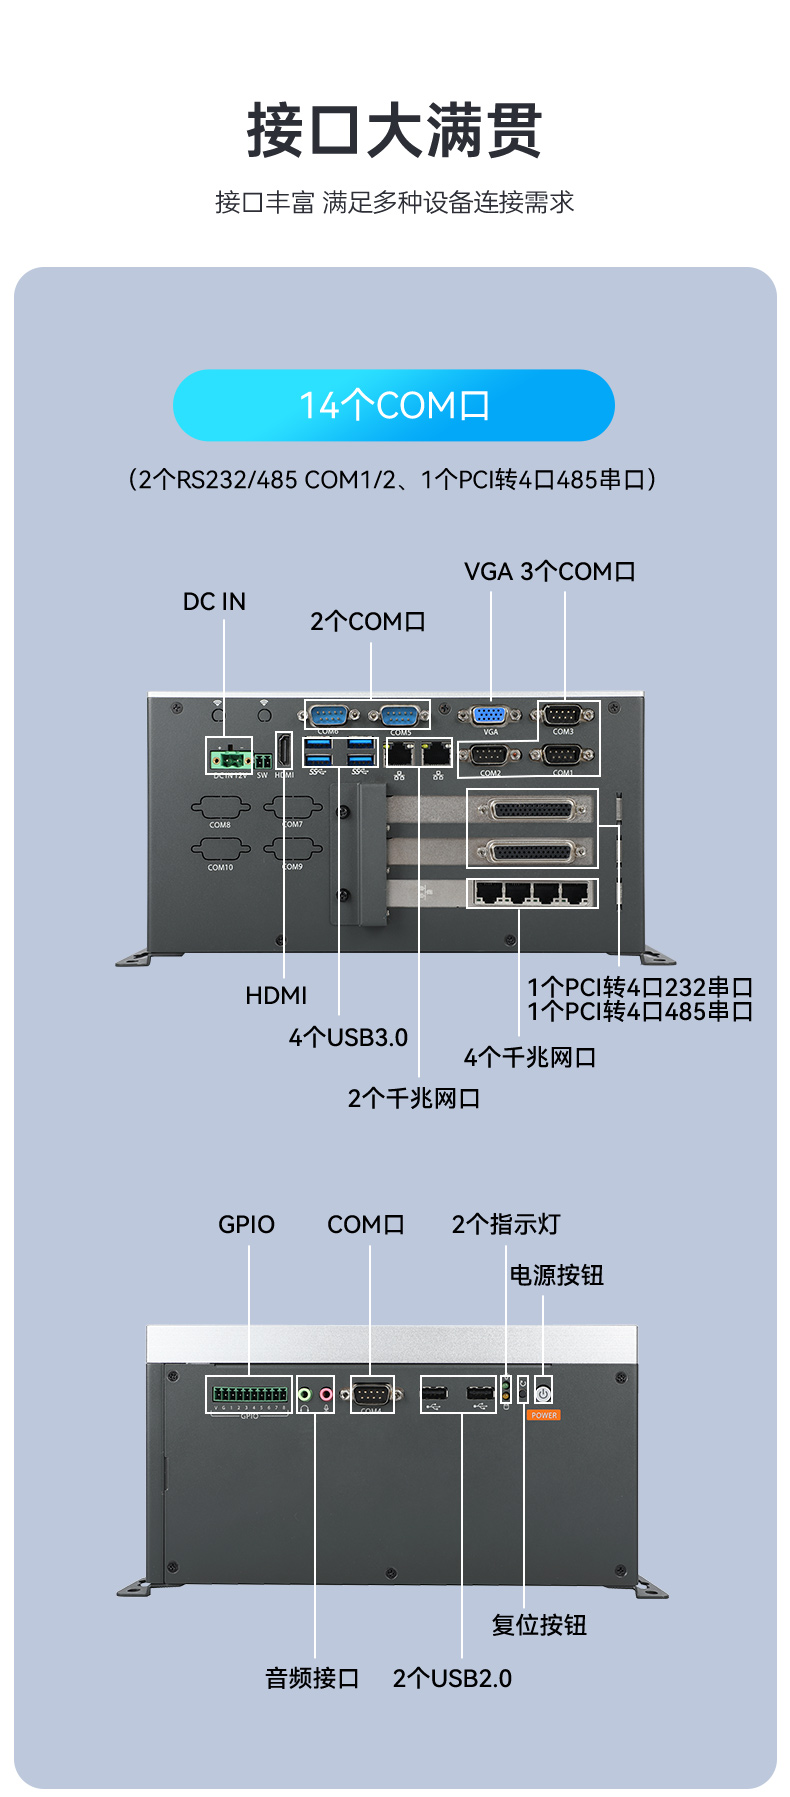 数据采集工控主机,生产检测设备工控机,DTB-3026K-1165.jpg